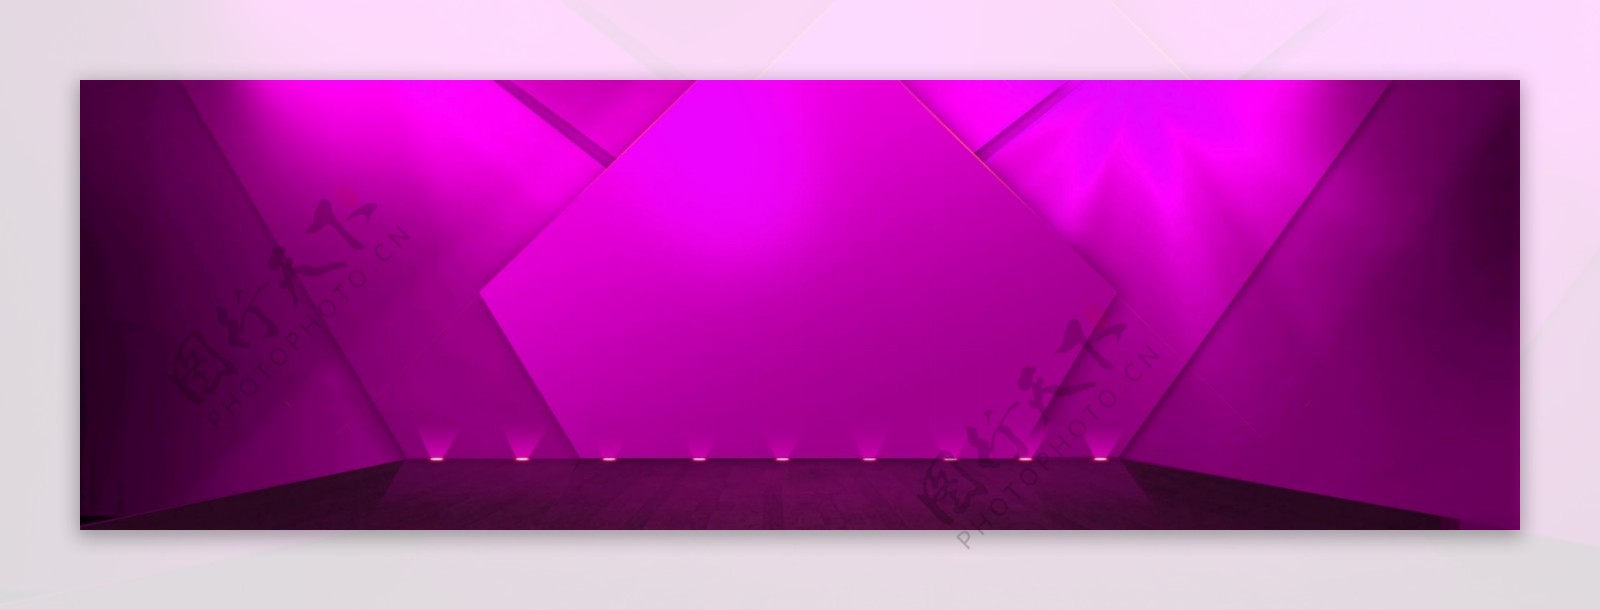 紫色灯光舞台psd素材